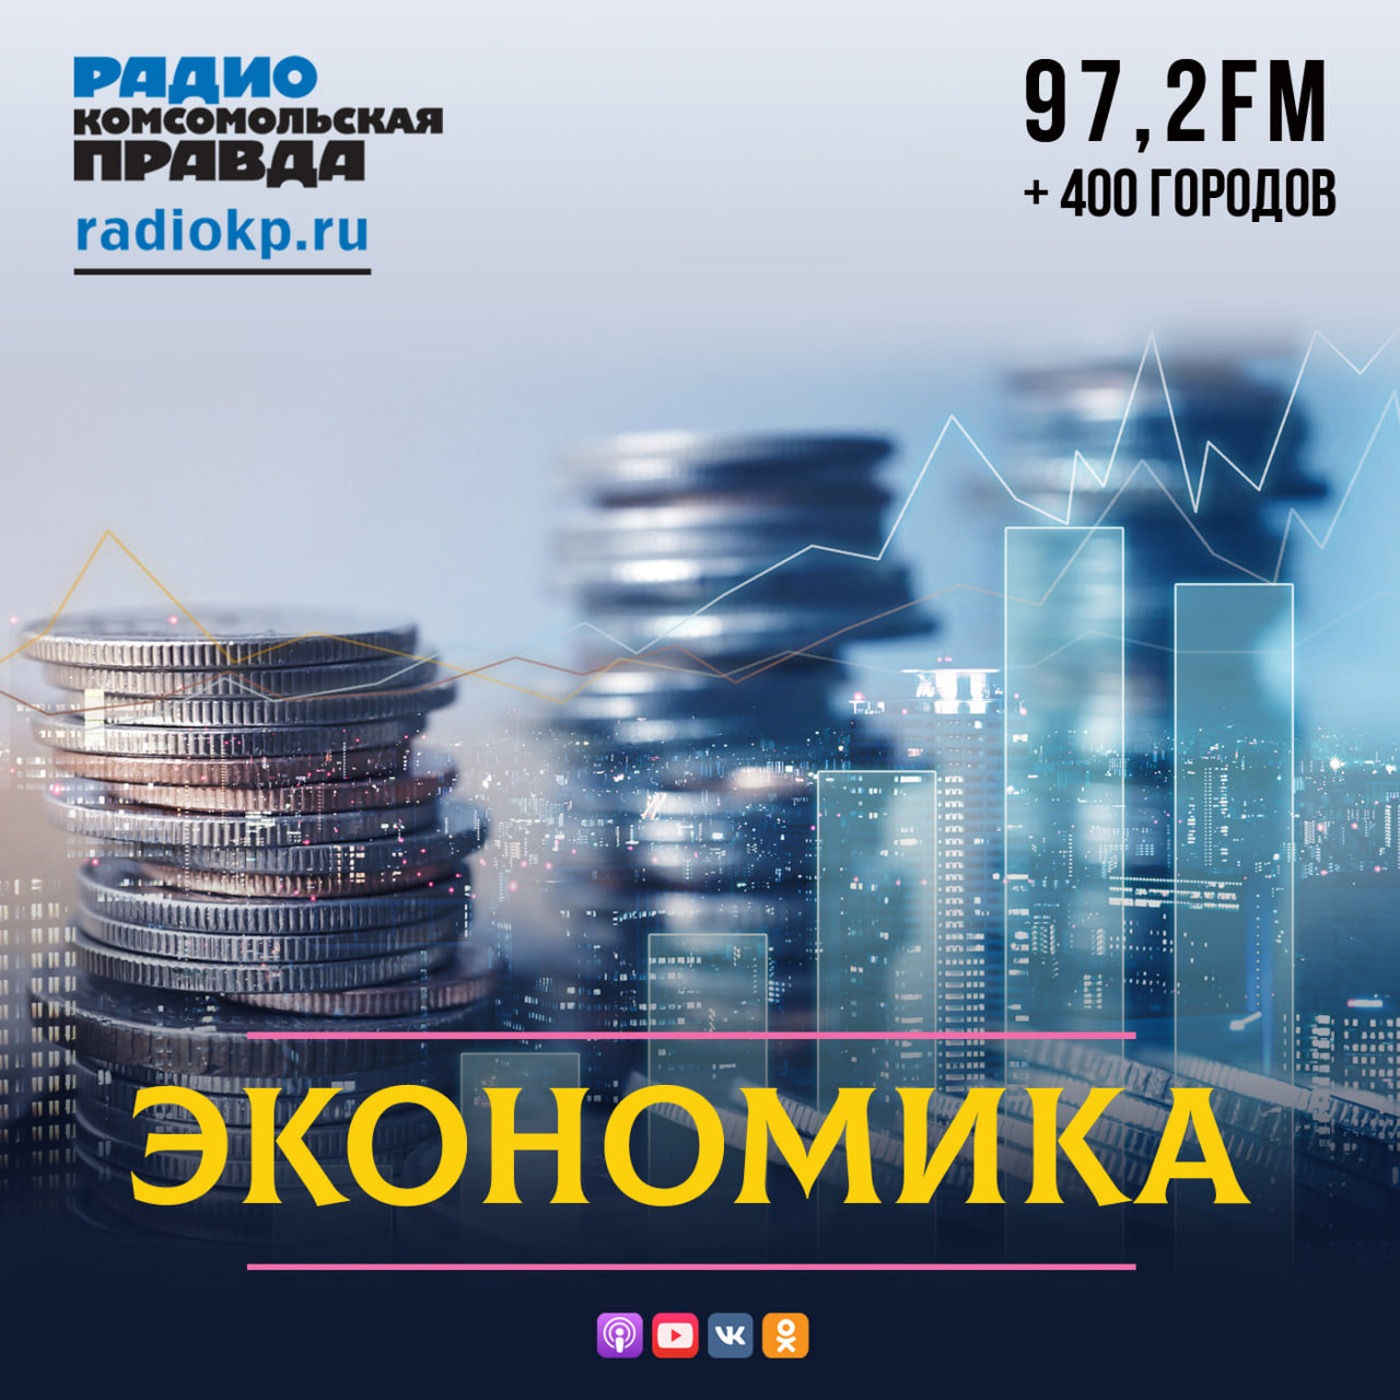 Экономика:Радио «Комсомольская правда»